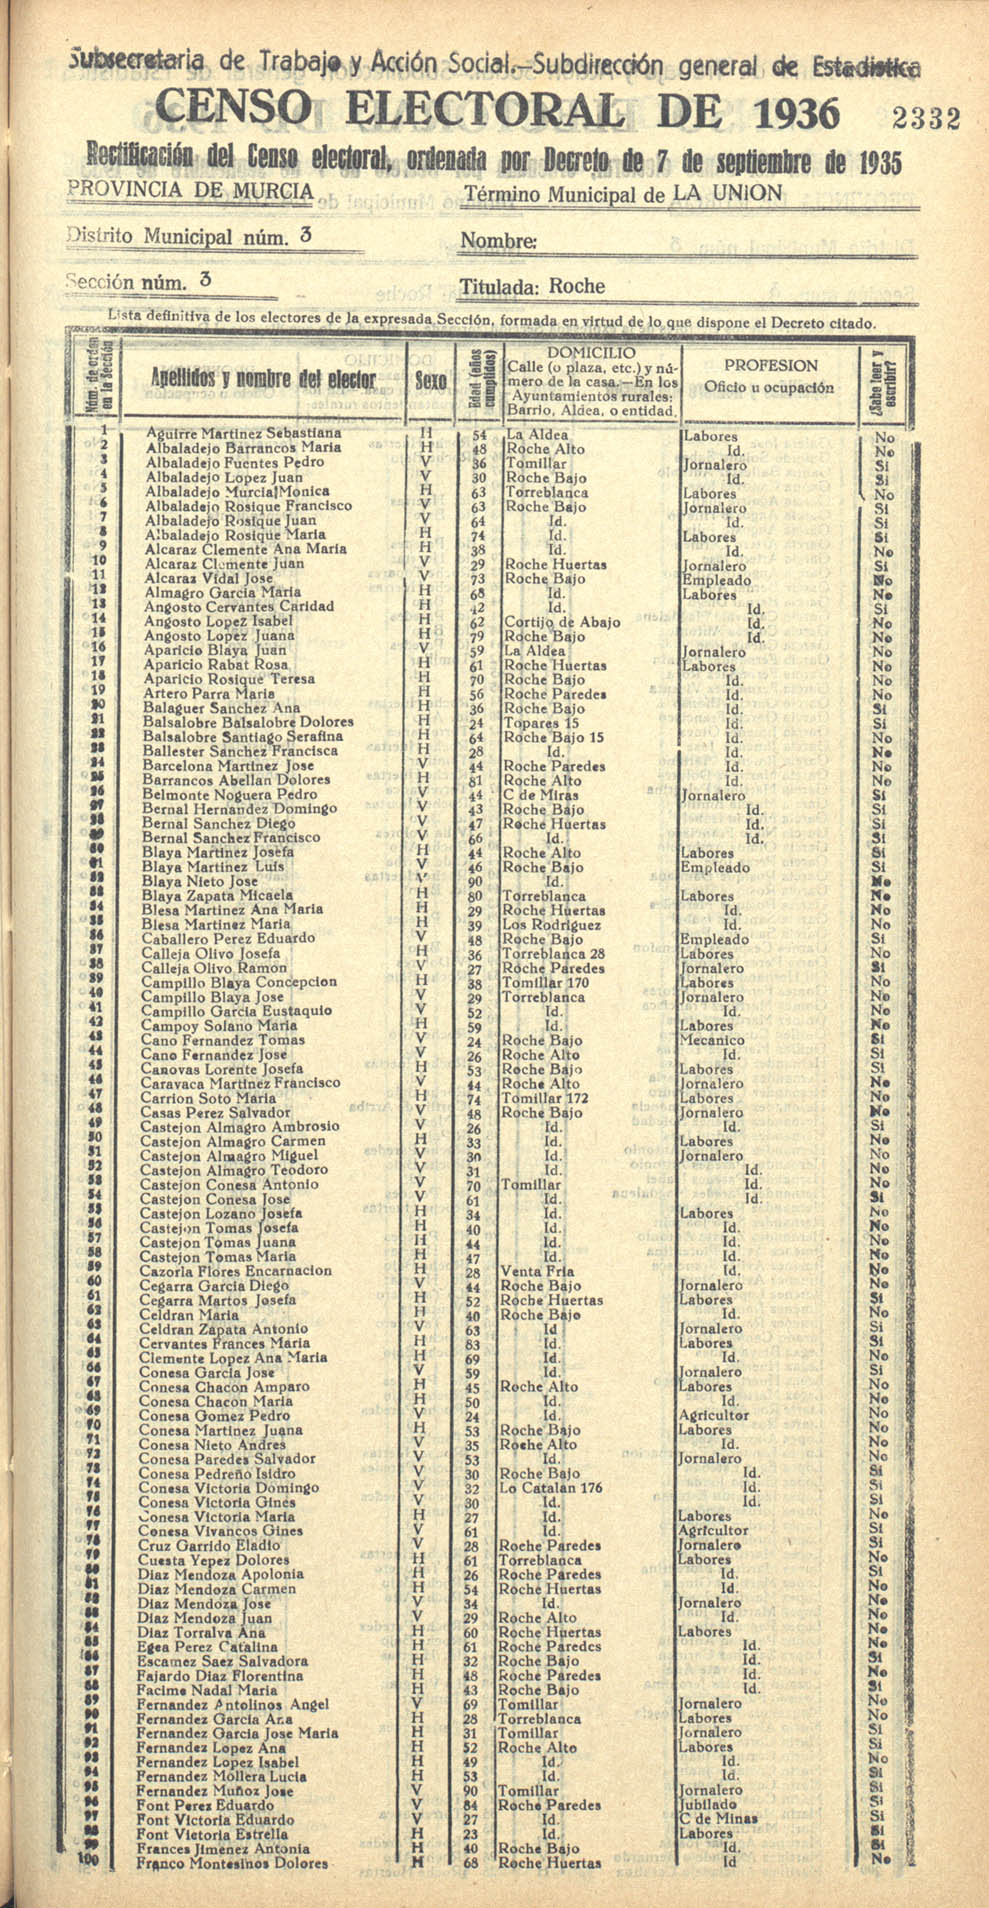 Censo electoral provincial de 1936. La Unión. Distrito 3º. Sección 3ª, Roche